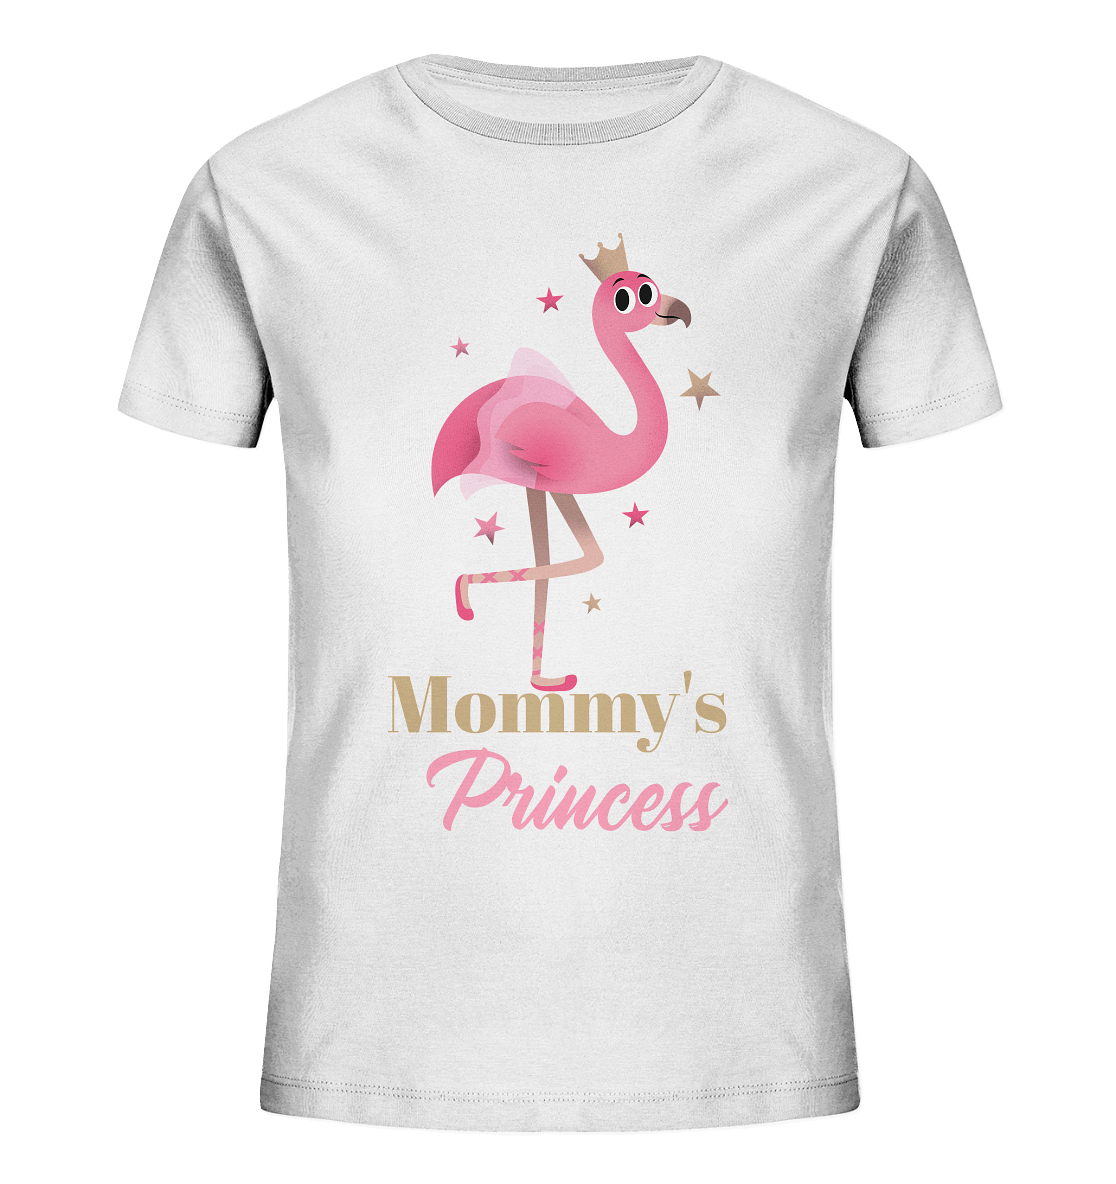 Mädchen T-Shirt mit süßem Flamingo-Prinzessin Aufdruck und Beschriftung "Mommy's Princess"